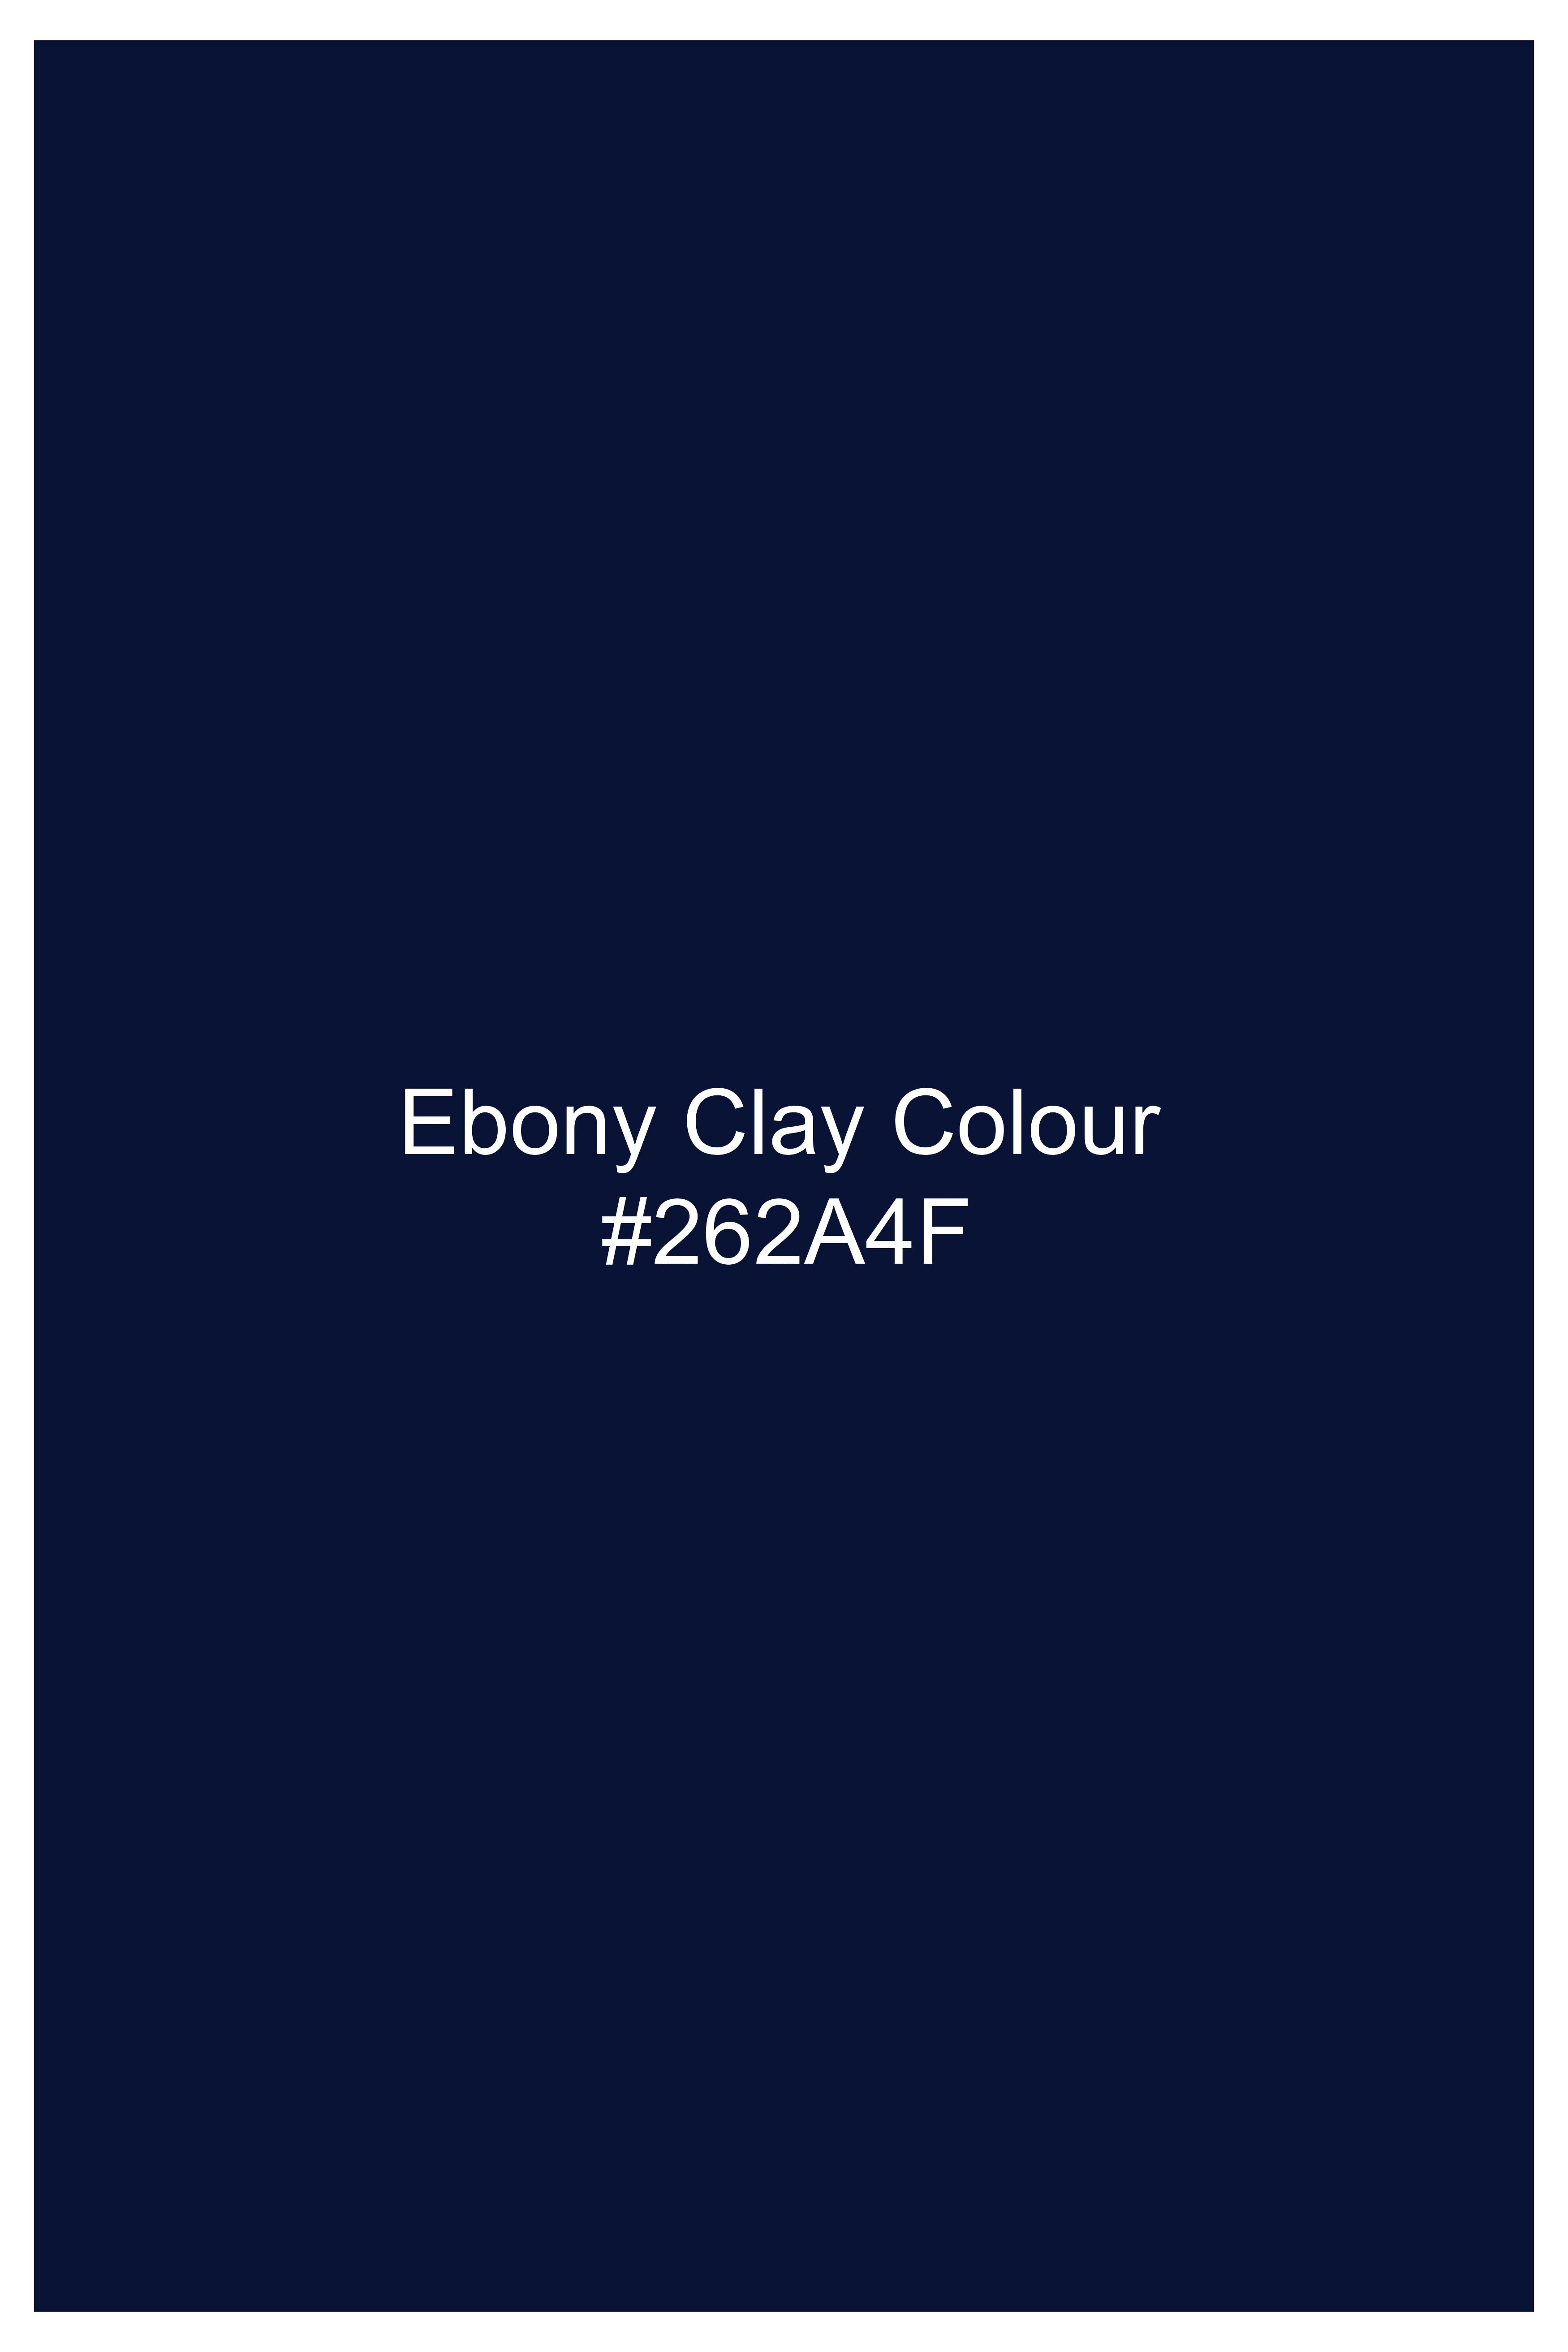 Ebony Clay Blue Wool Rich Waistcoat V2761-36, V2761-38, V2761-40, V2761-42, V2761-44, V2761-46, V2761-48, V2761-50, V2761-52, V2761-54, V2761-56, V2761-58, V2761-60